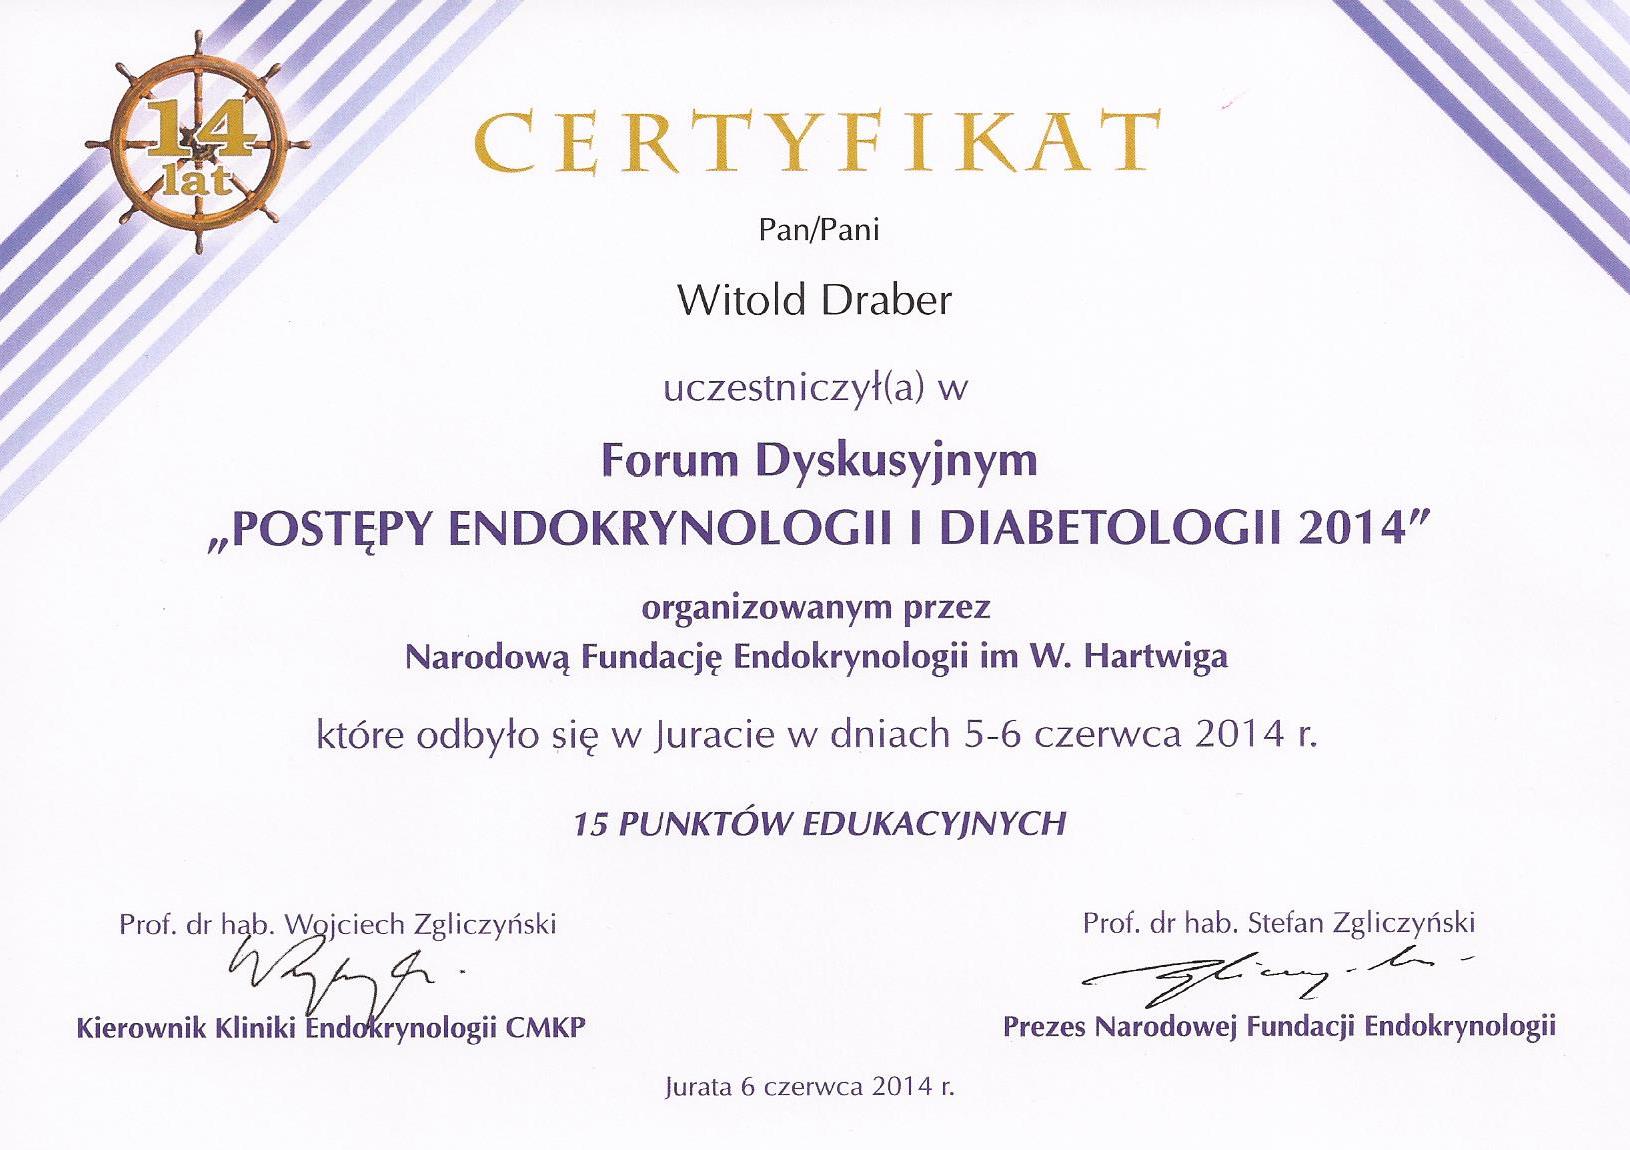 Certyfikat z konferencji o endokrynologii i diabetologii